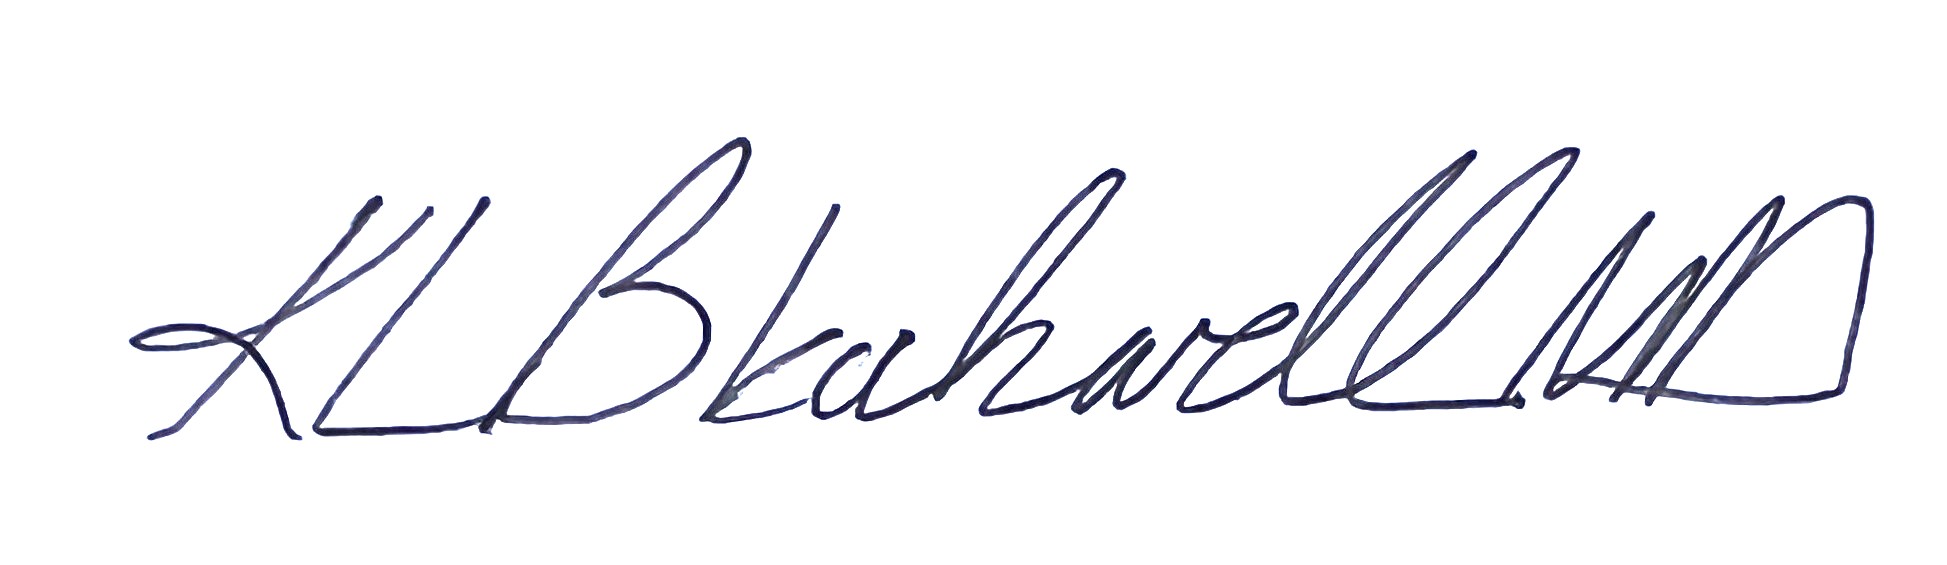 K. Blackwell Updated Signature2 [4.24.24].jpg